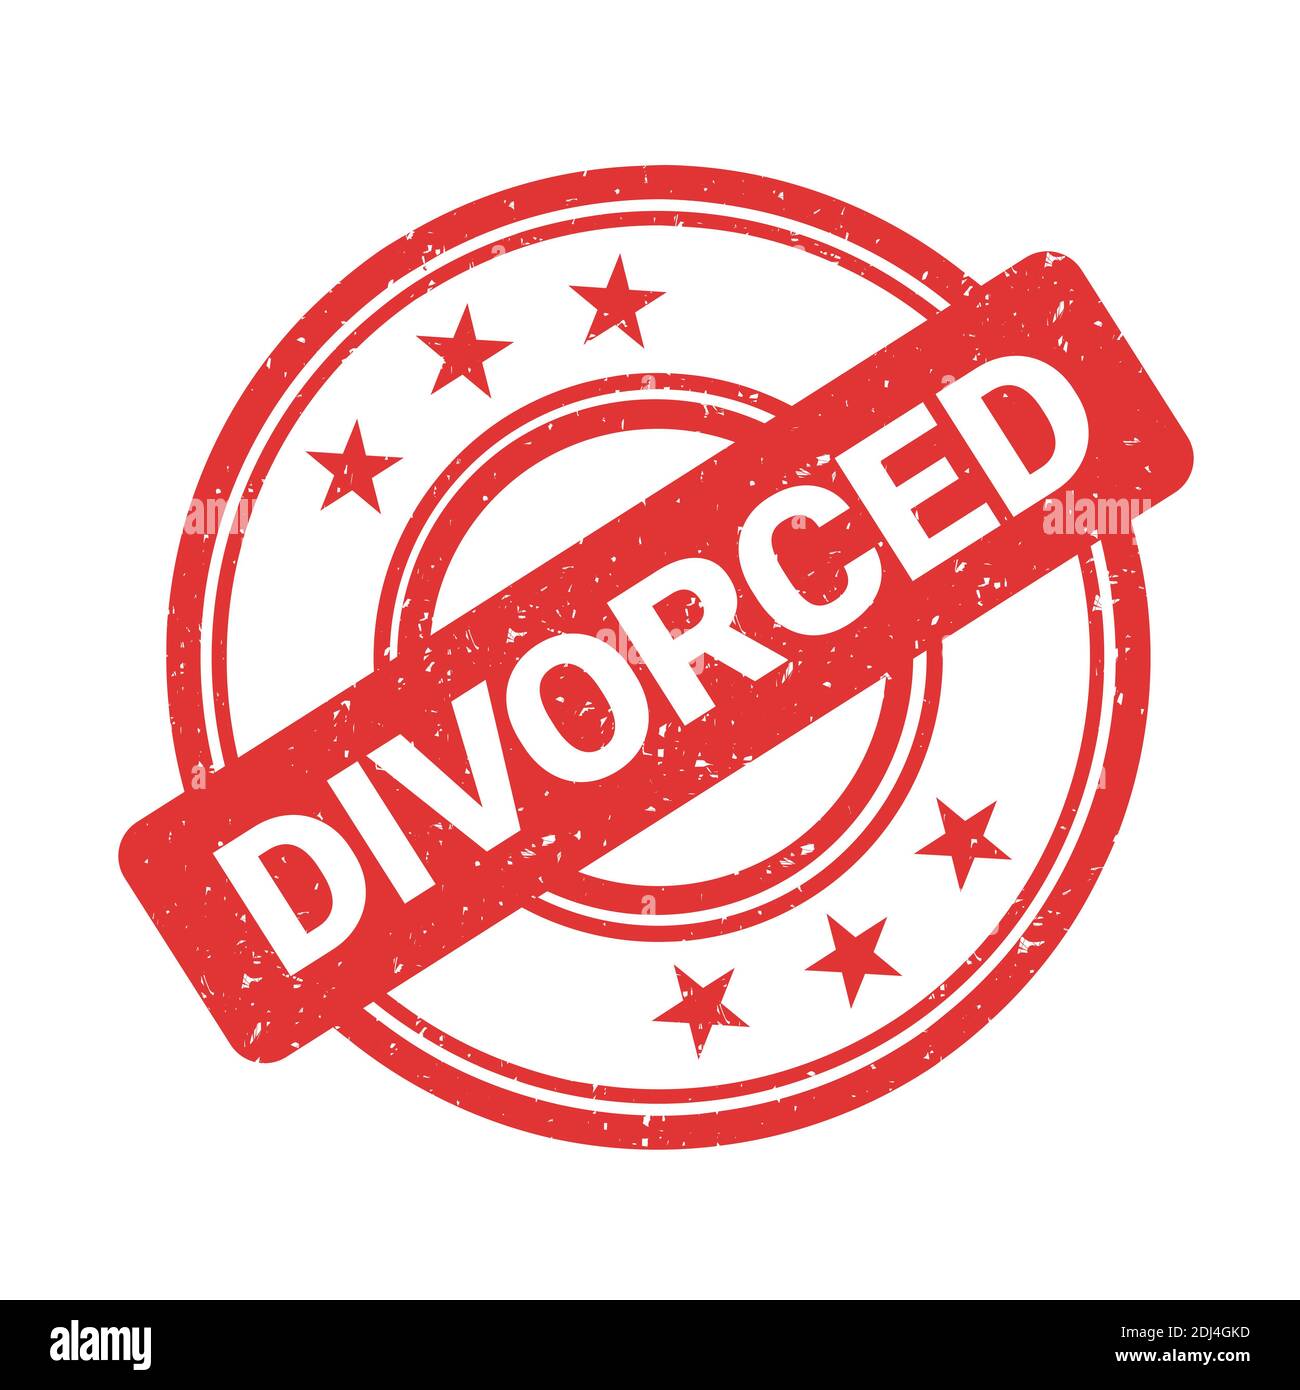 L'accord de divorce est tampalisé après le procès pour la résiliation officielle et légale du mariage. Illustration vectorielle Banque D'Images